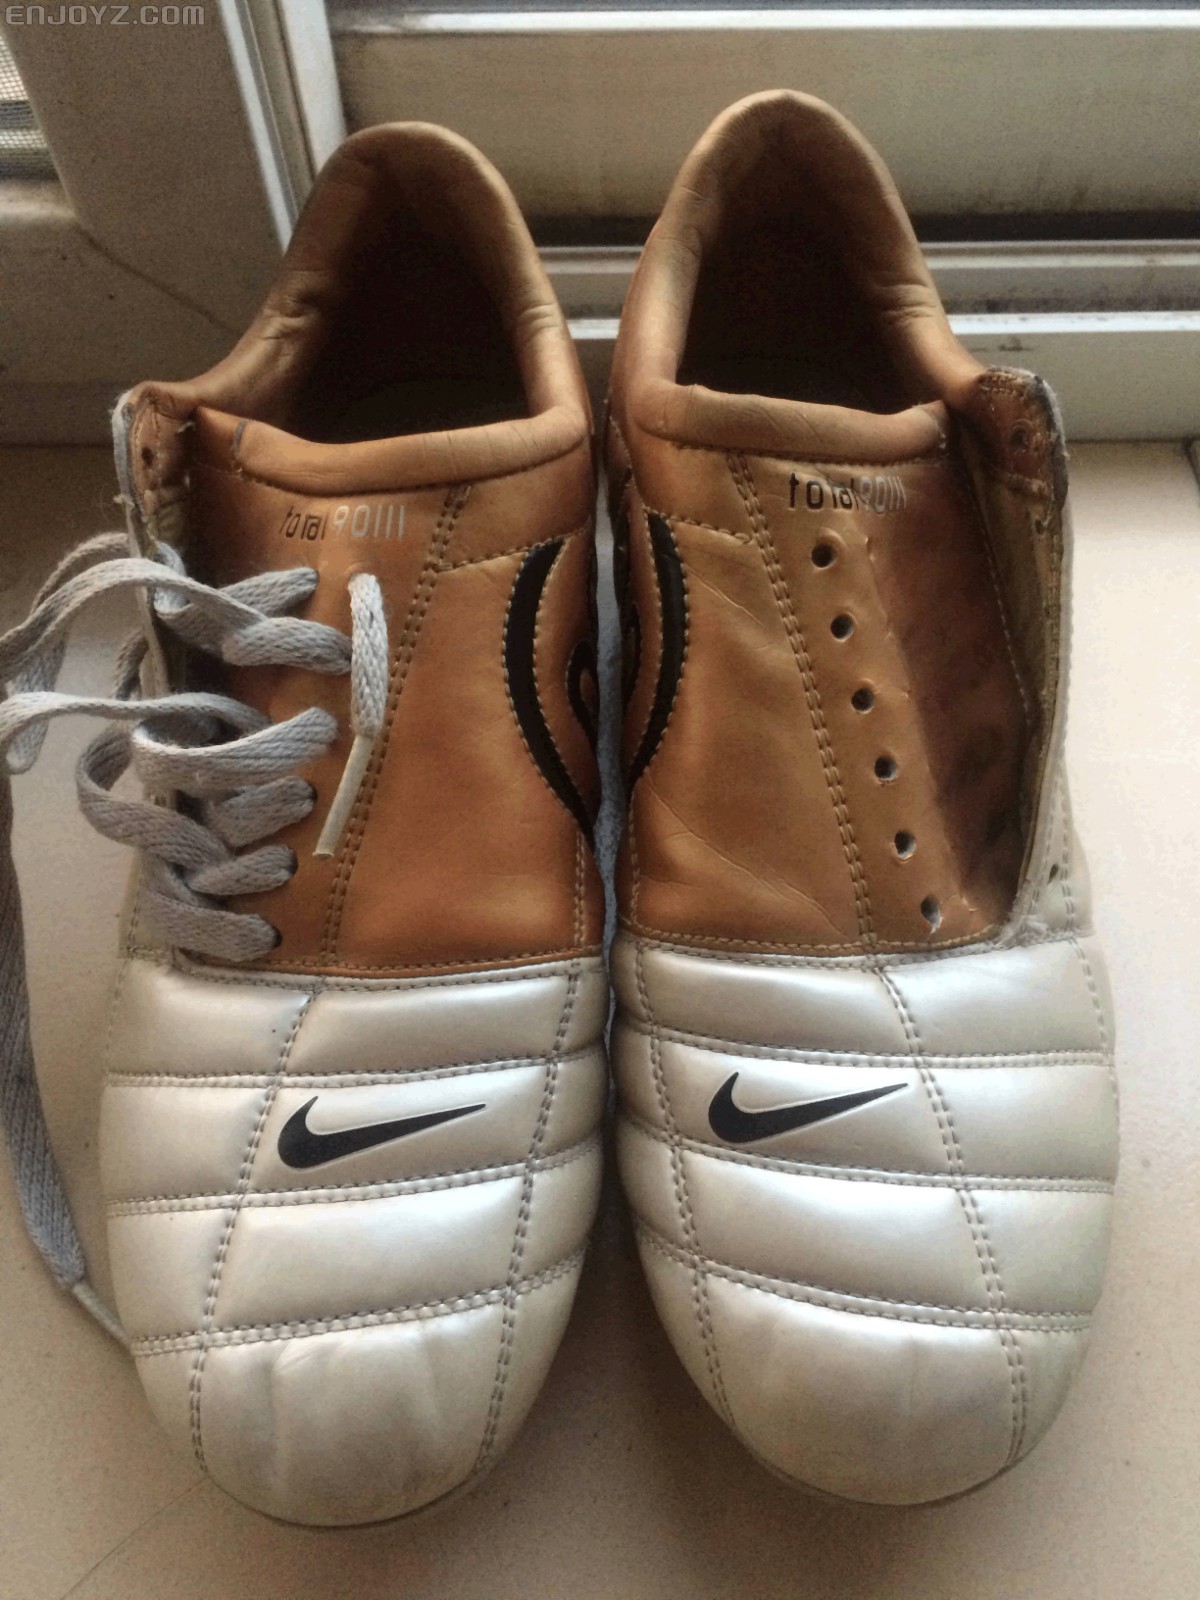 出售耐克正品t903足球鞋,白金配色